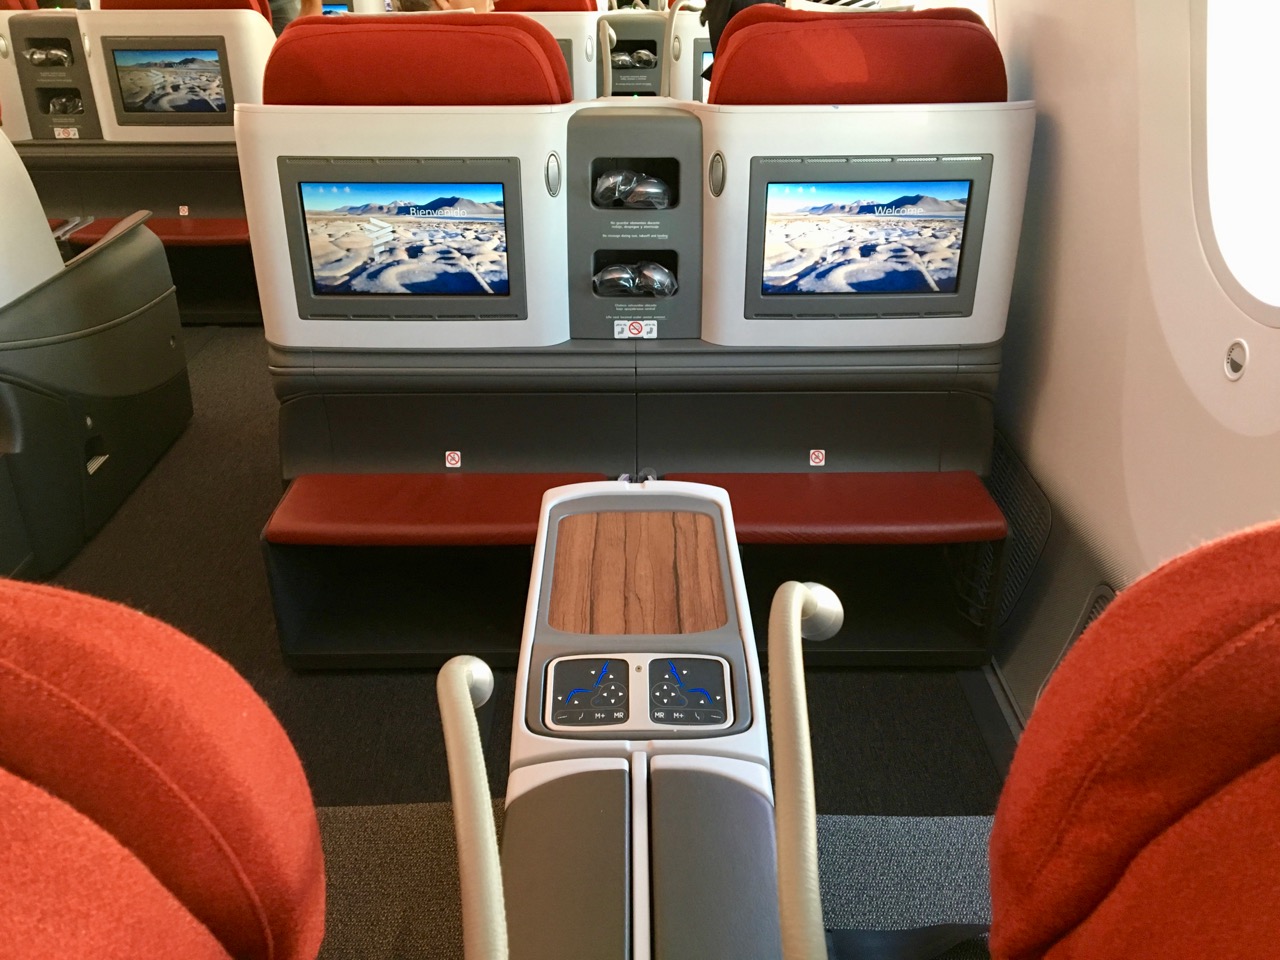 LATAM 787 Business Class inflight entertainment